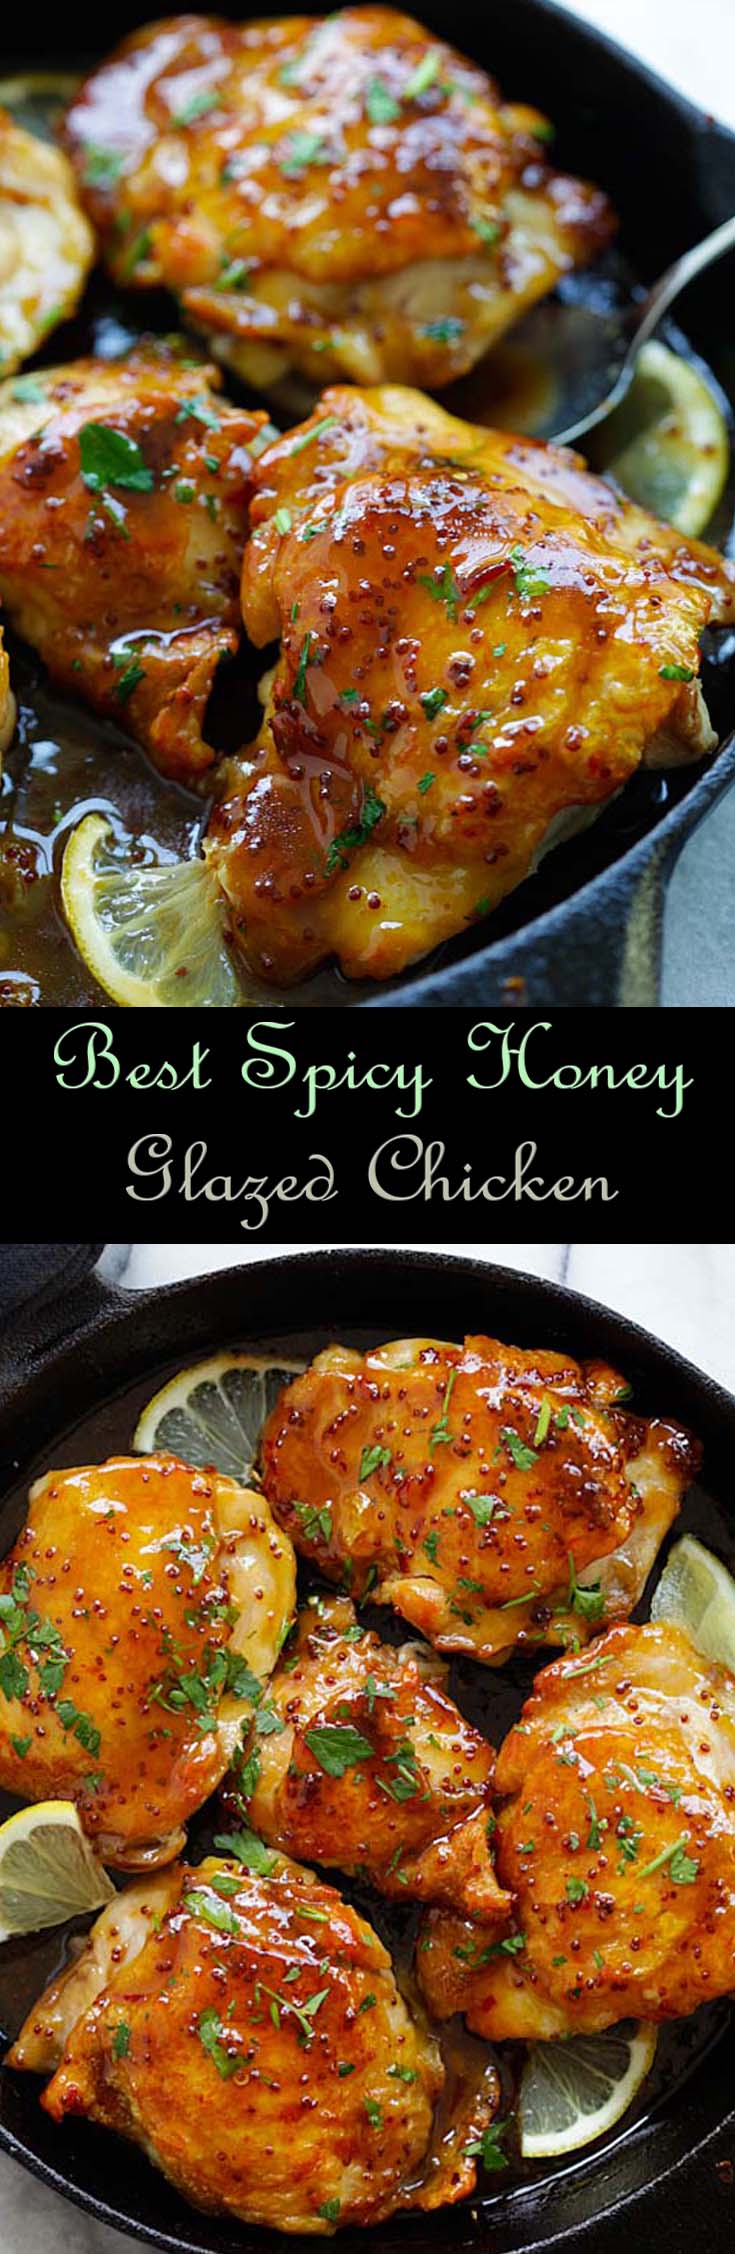 Best Spicy Honey-Glazed Chicken